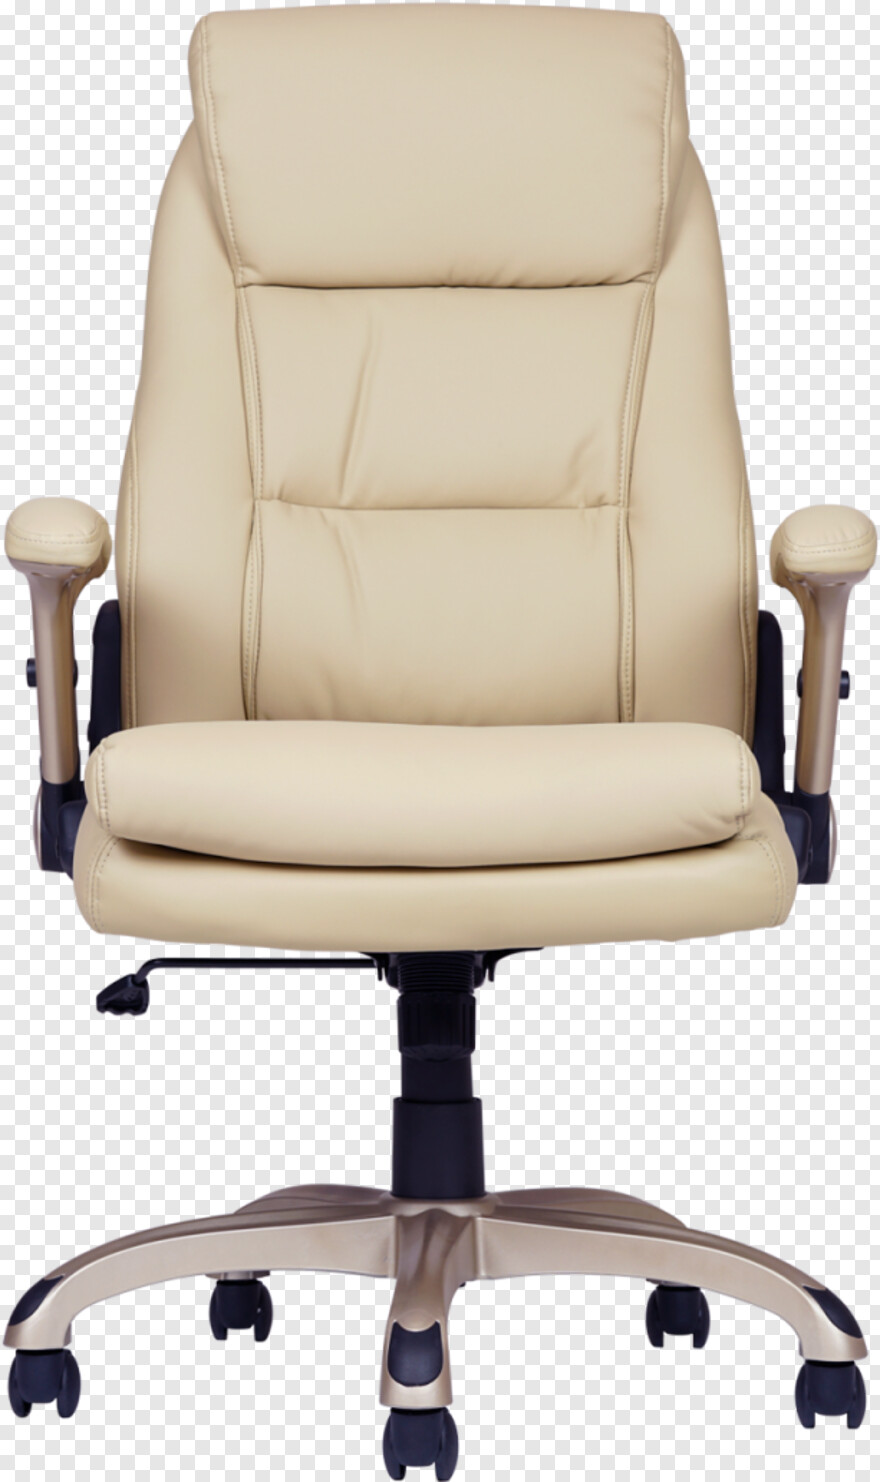 chair # 452005